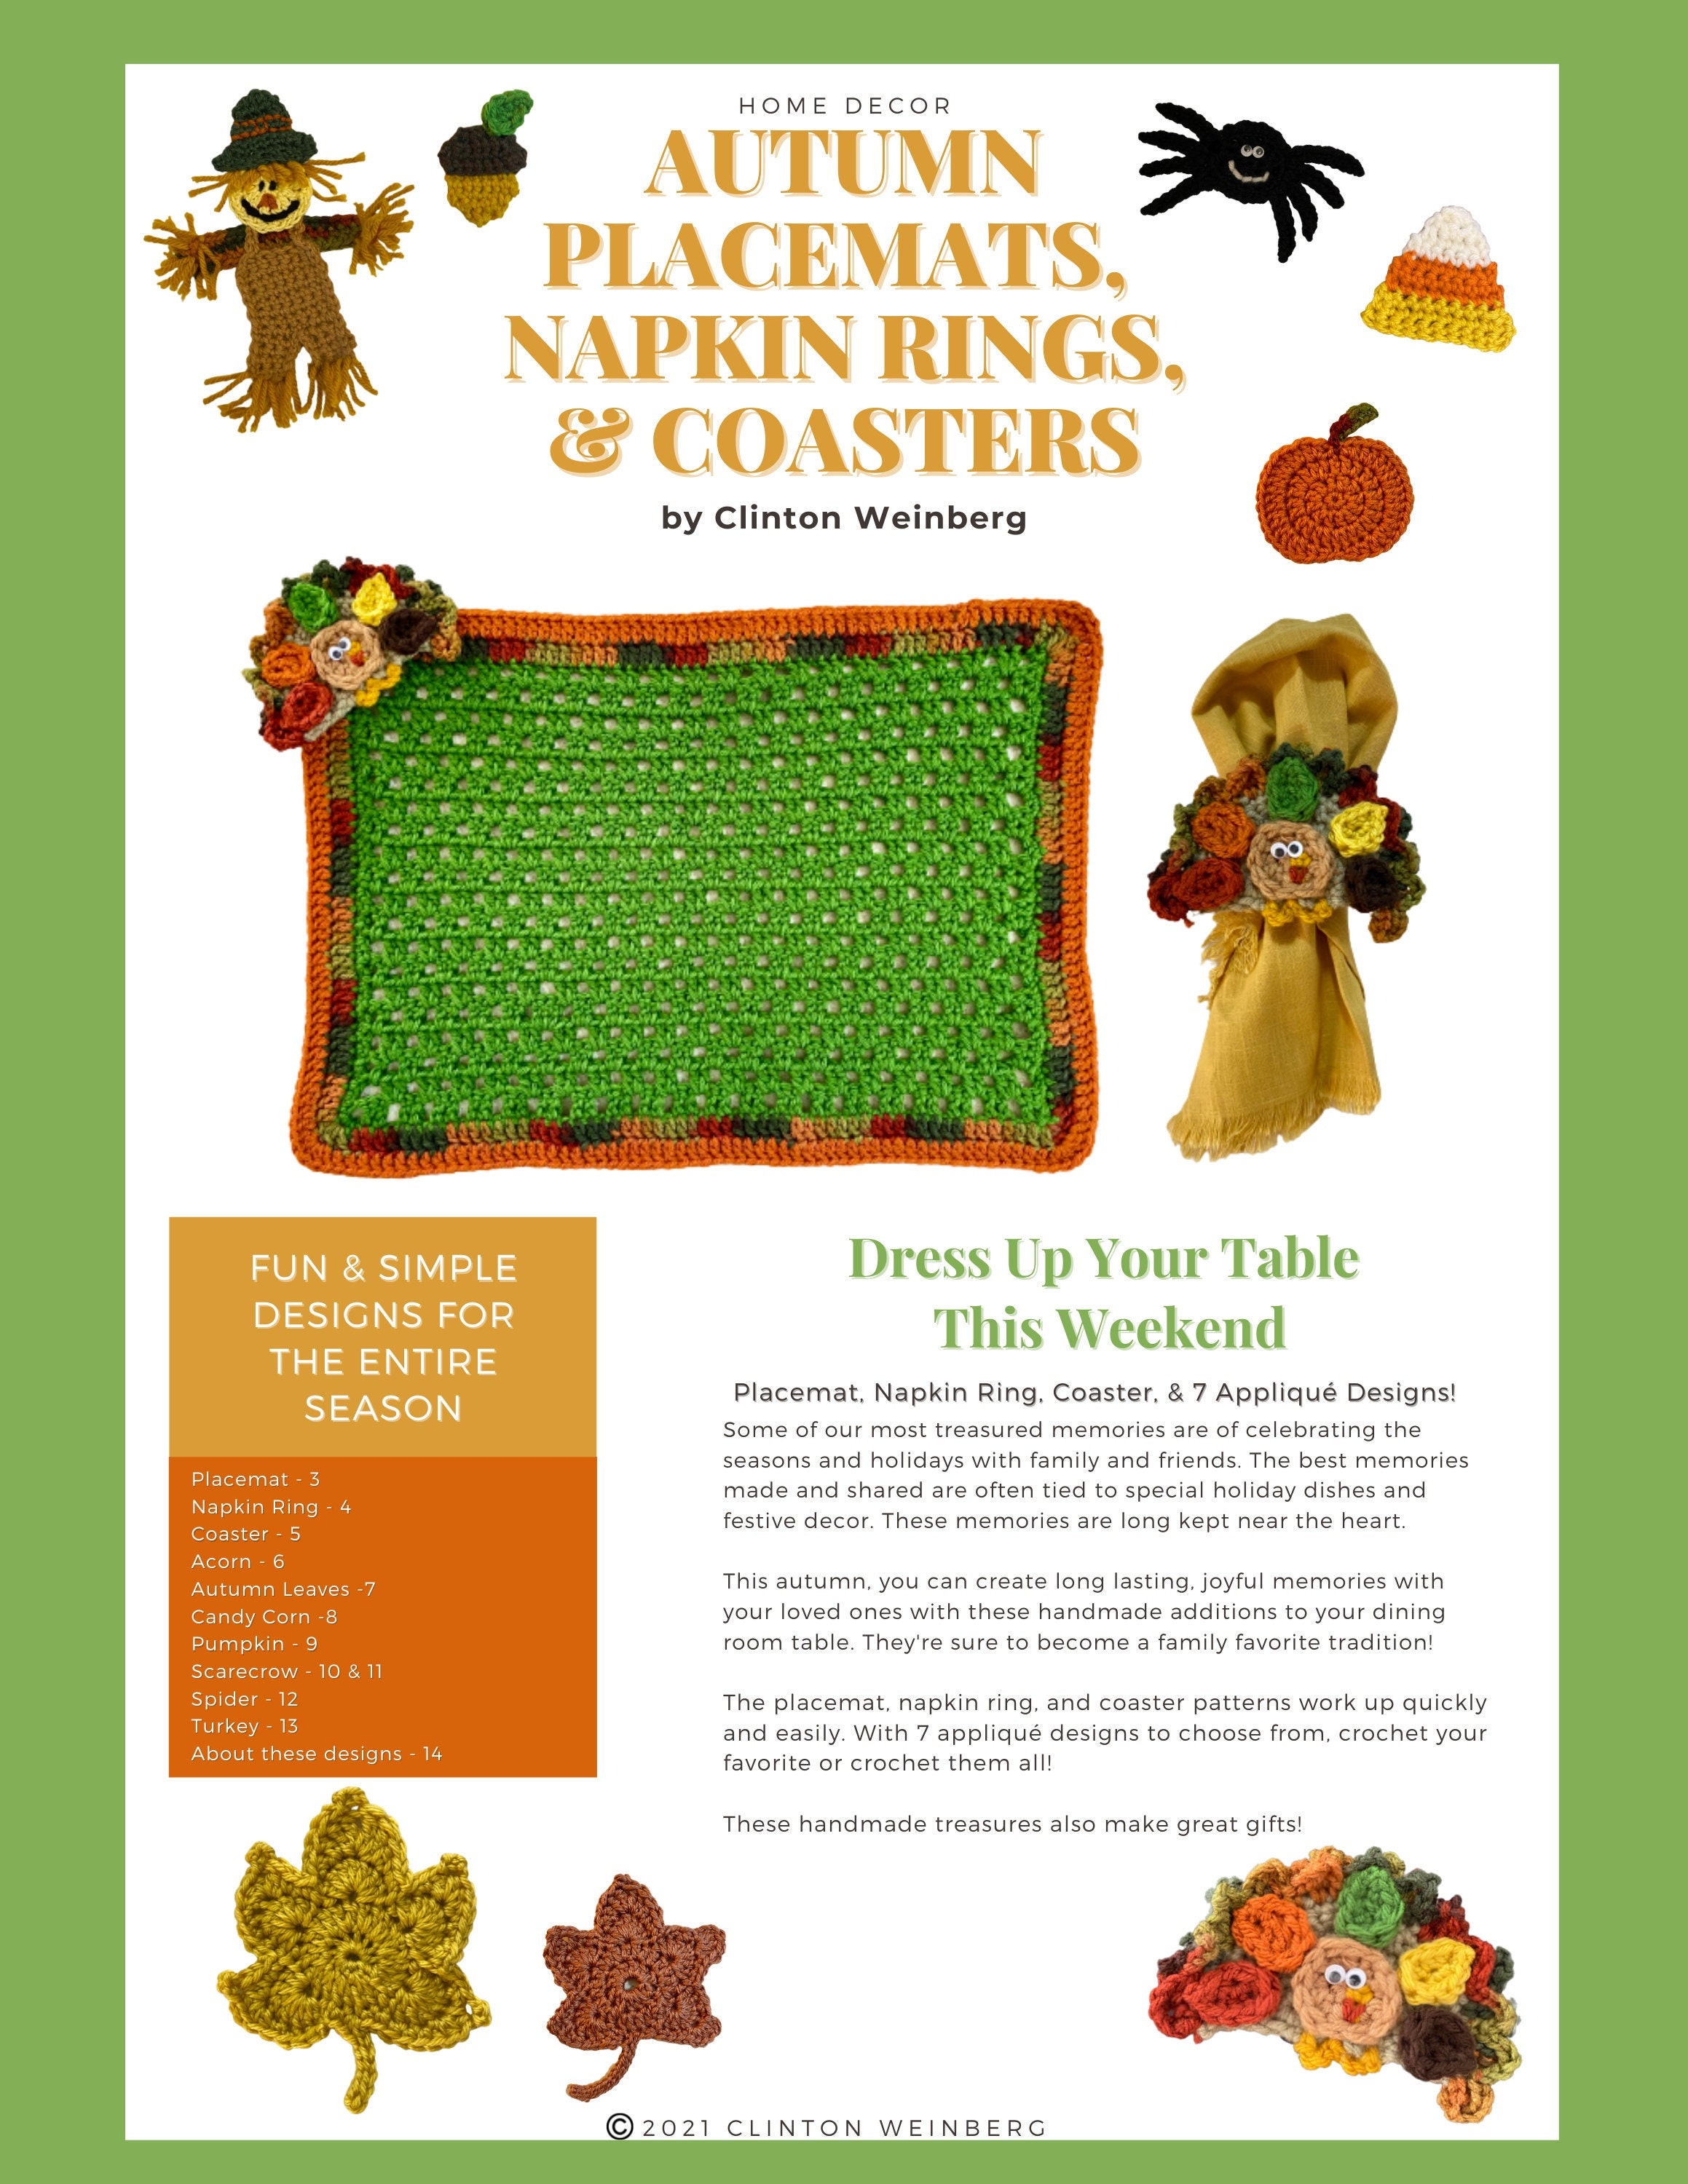 Holiday Napkin Decor - Celebrate Creativity